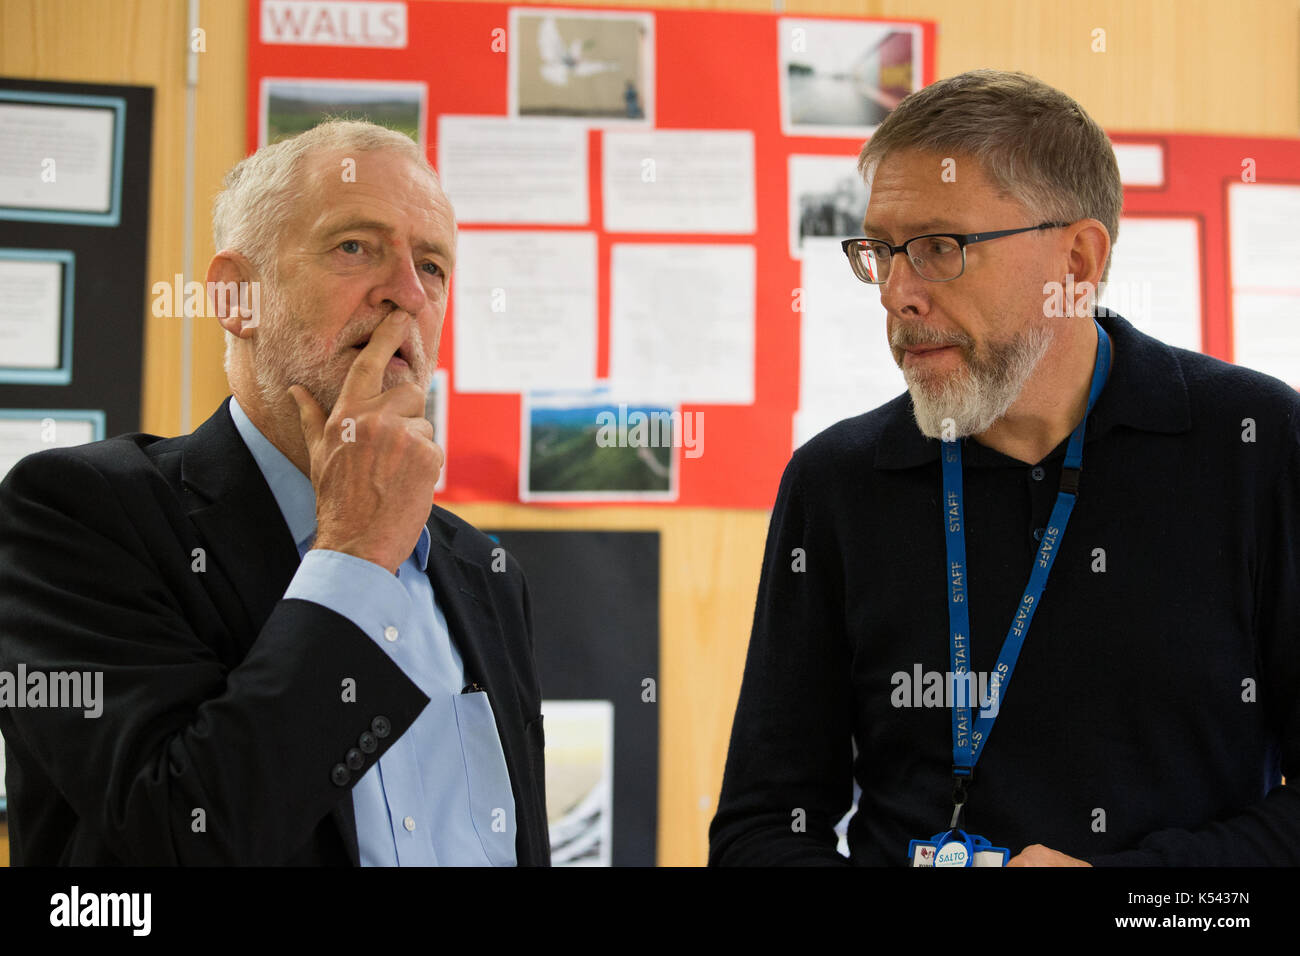 Líder laborista Jeremy Corbyn charlas a Robin Burgess, CEO del centro esperanza como él visita el centro esperanza que ayuda a combatir la falta de vivienda y aliviar la pobreza en Northampton sur. Foto de stock